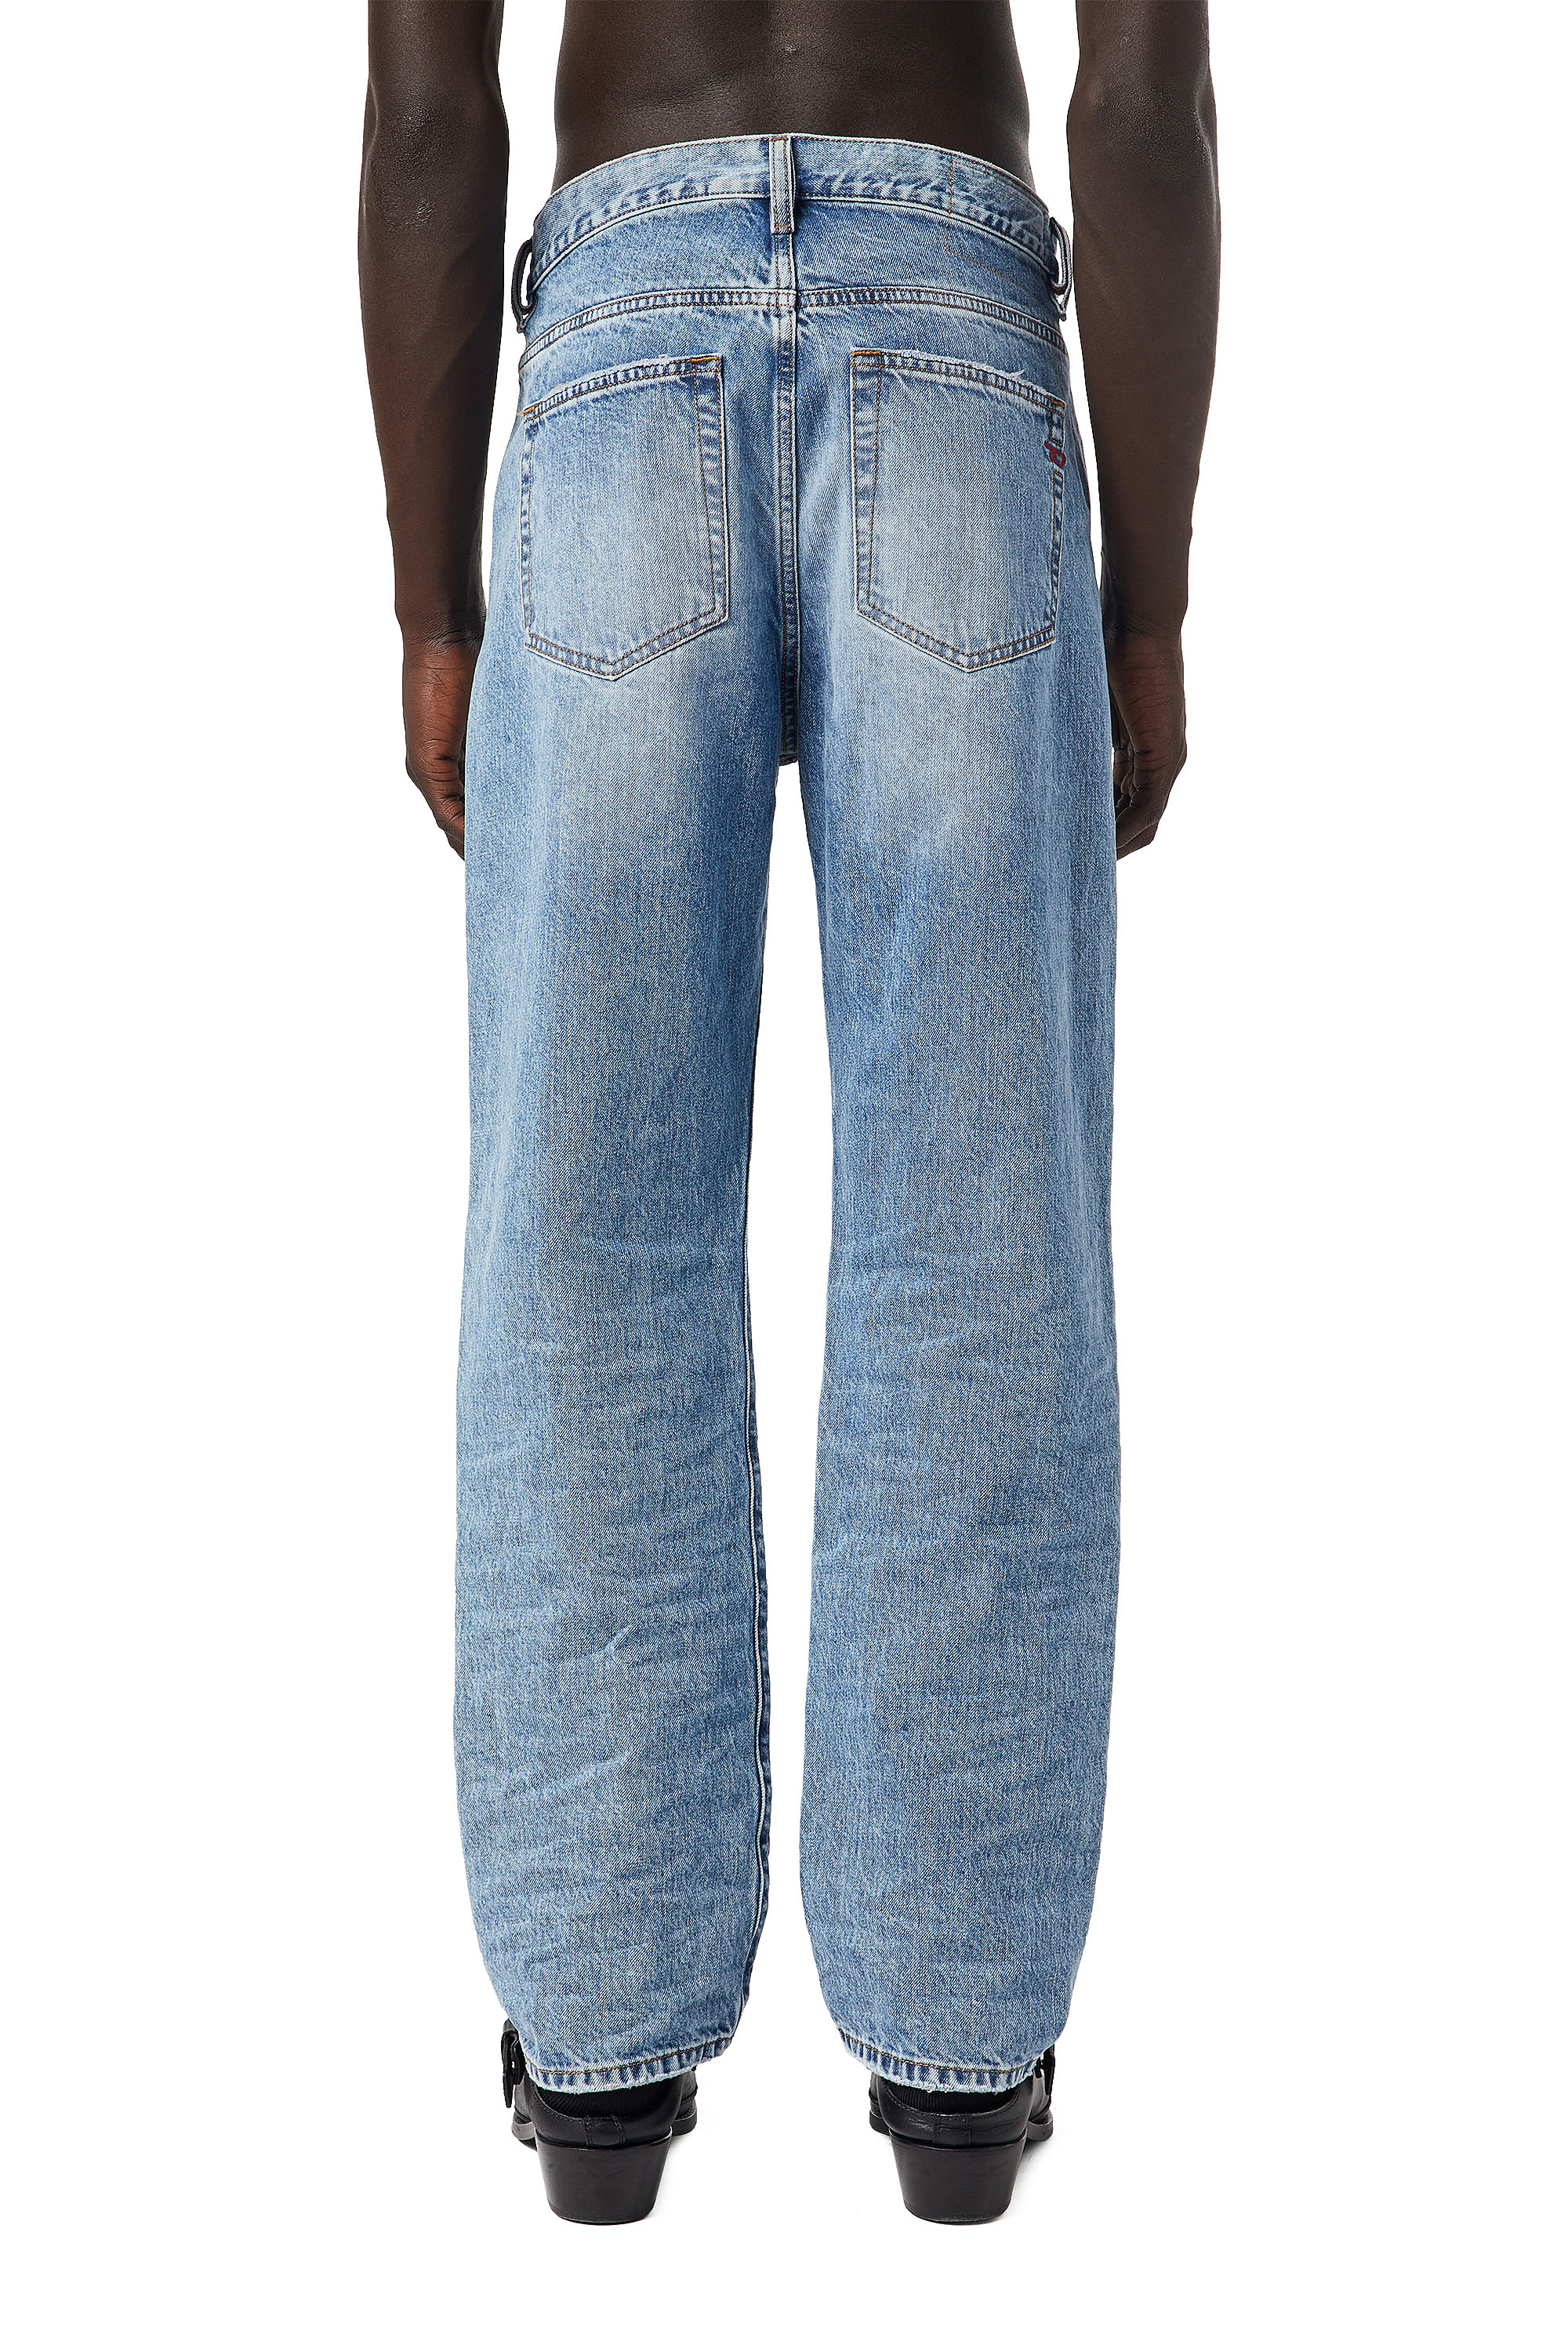 Super skinny fit jeans herren - Wählen Sie unserem Favoriten